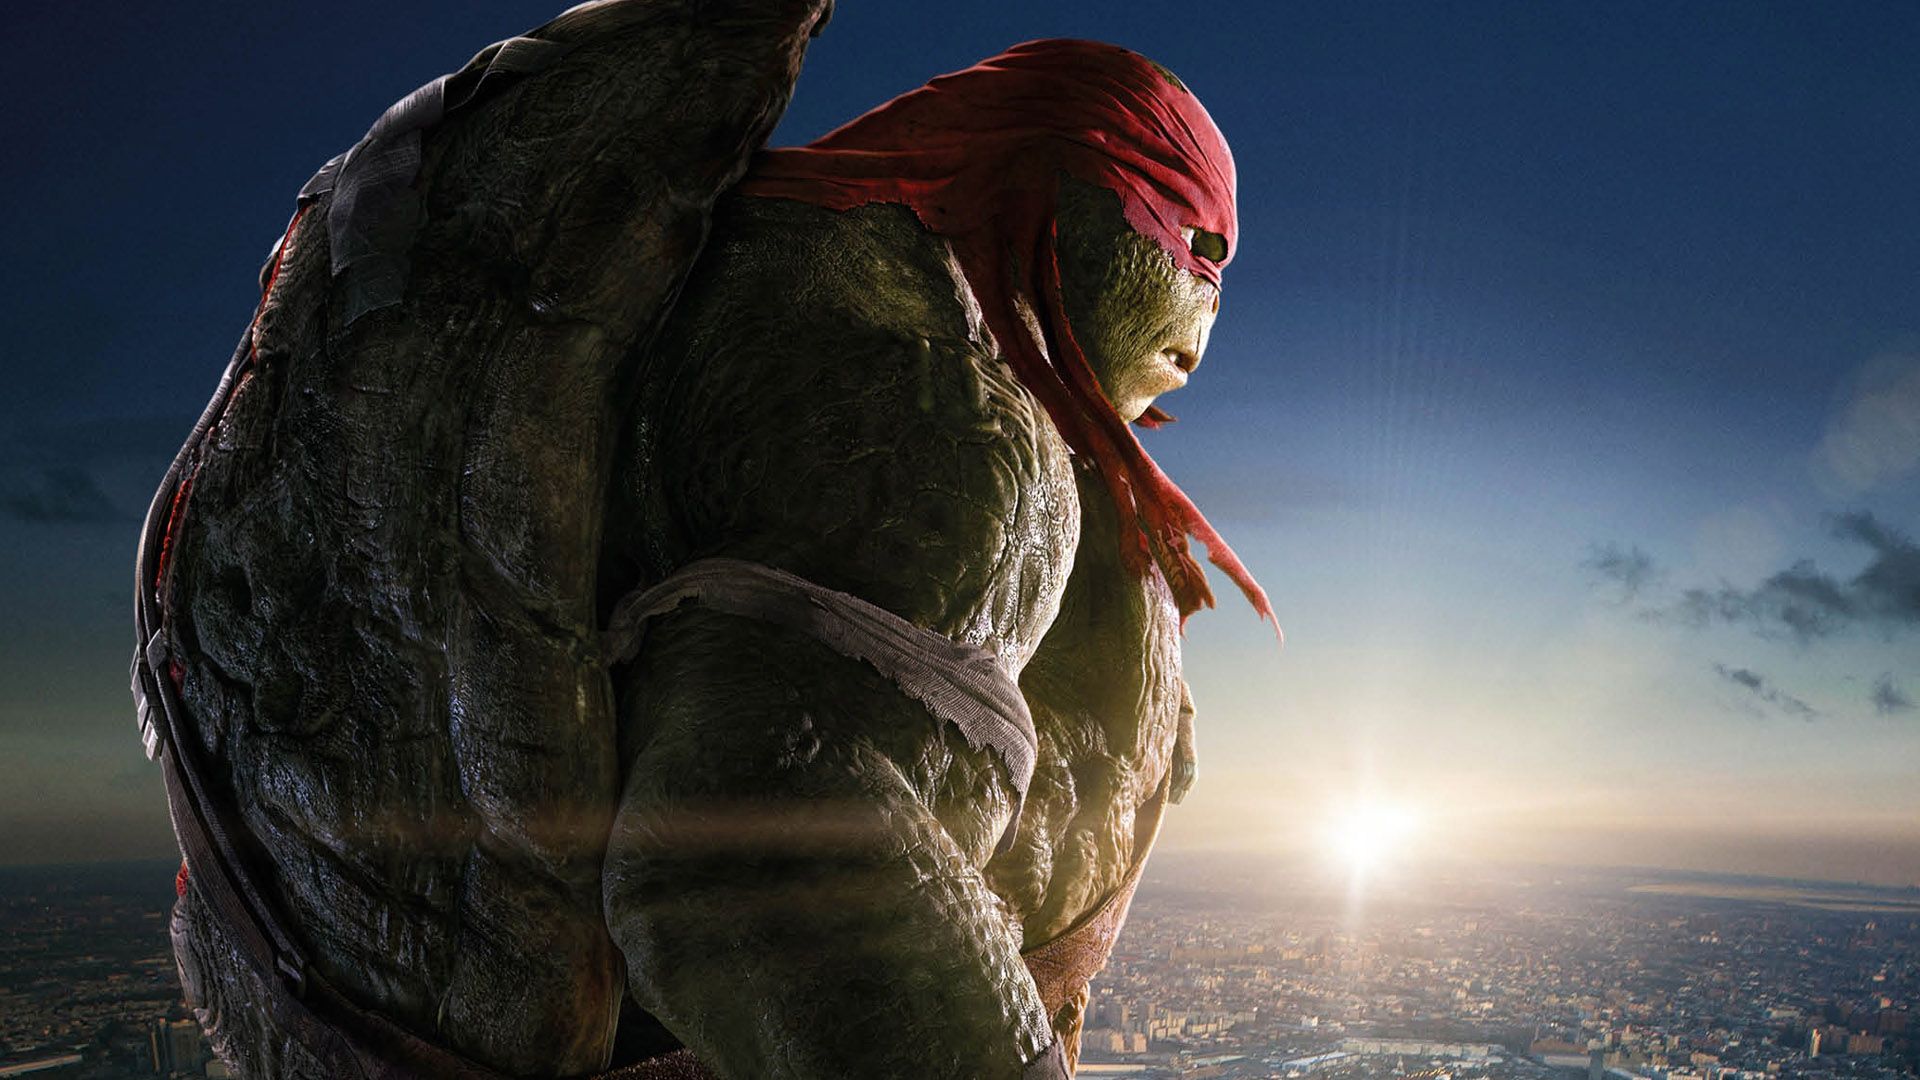 Raph In Teenage Mutant Ninja Turtles 2014 Movie Wallpaper Sdcc 2014 Teenage Mutant Ninja Turtles Panel And Footage Recap